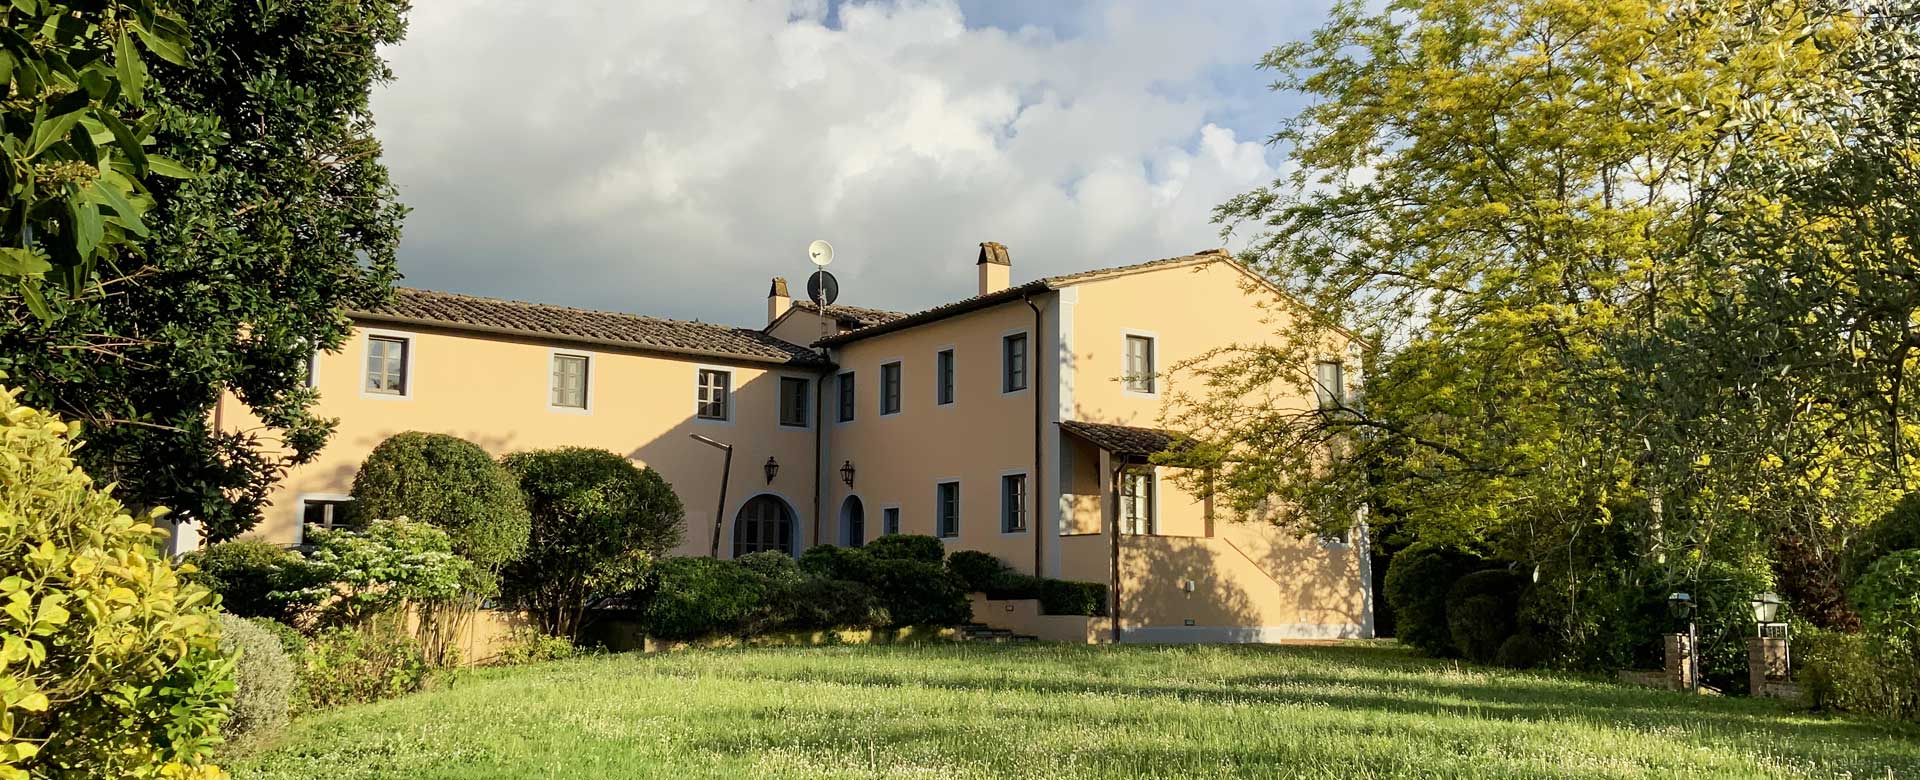 Casale della tenuta Villa Saletta